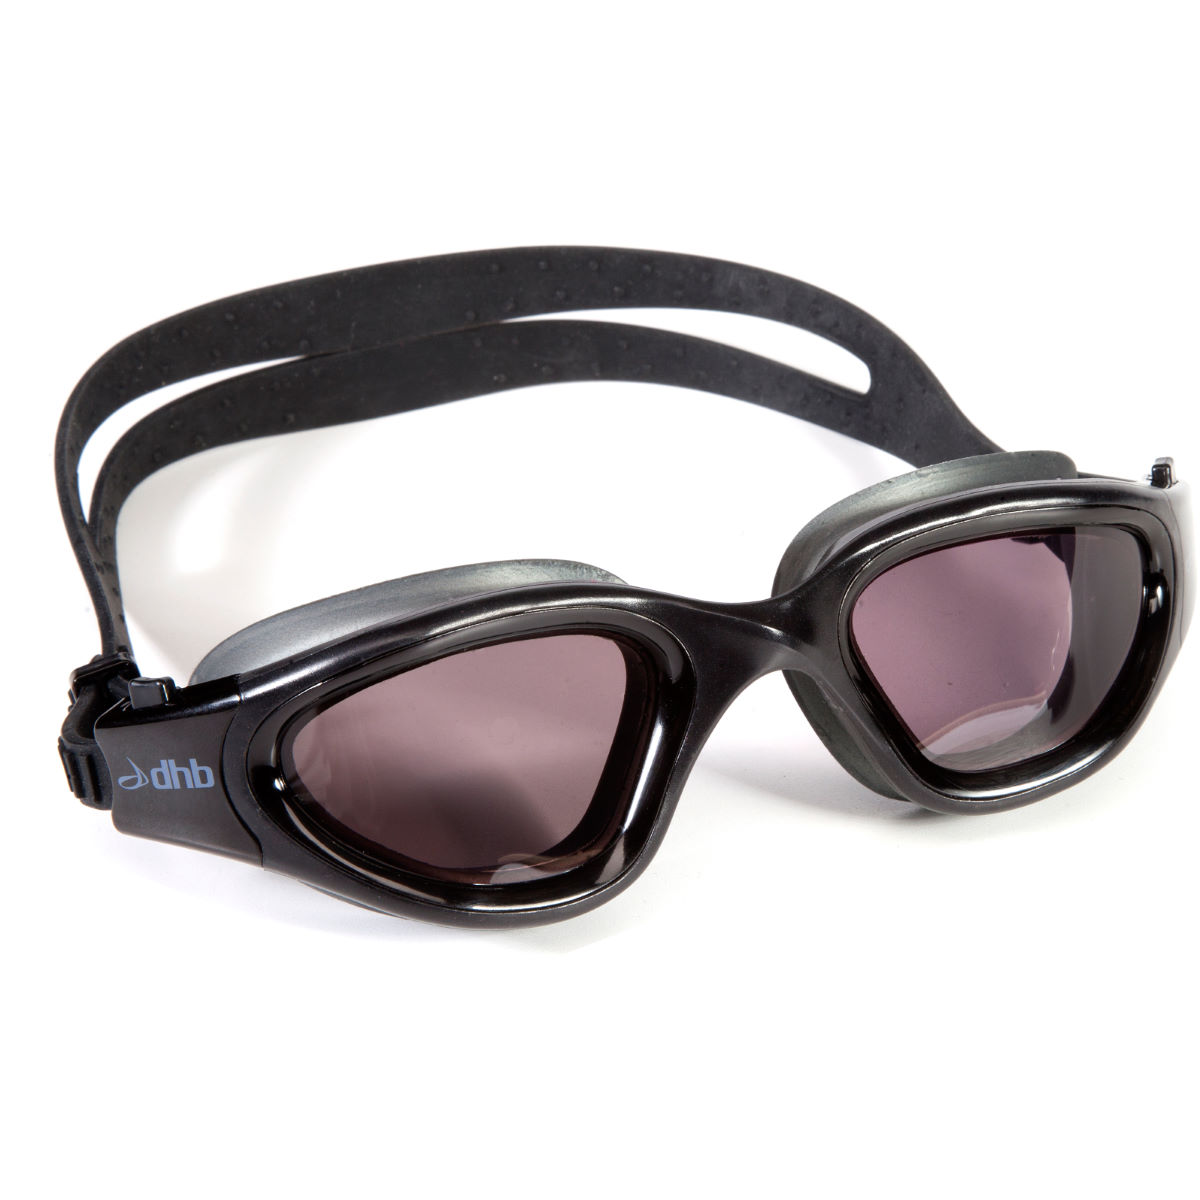 Gafas de natación con lentes polarizadas dhb Turbo - Gafas